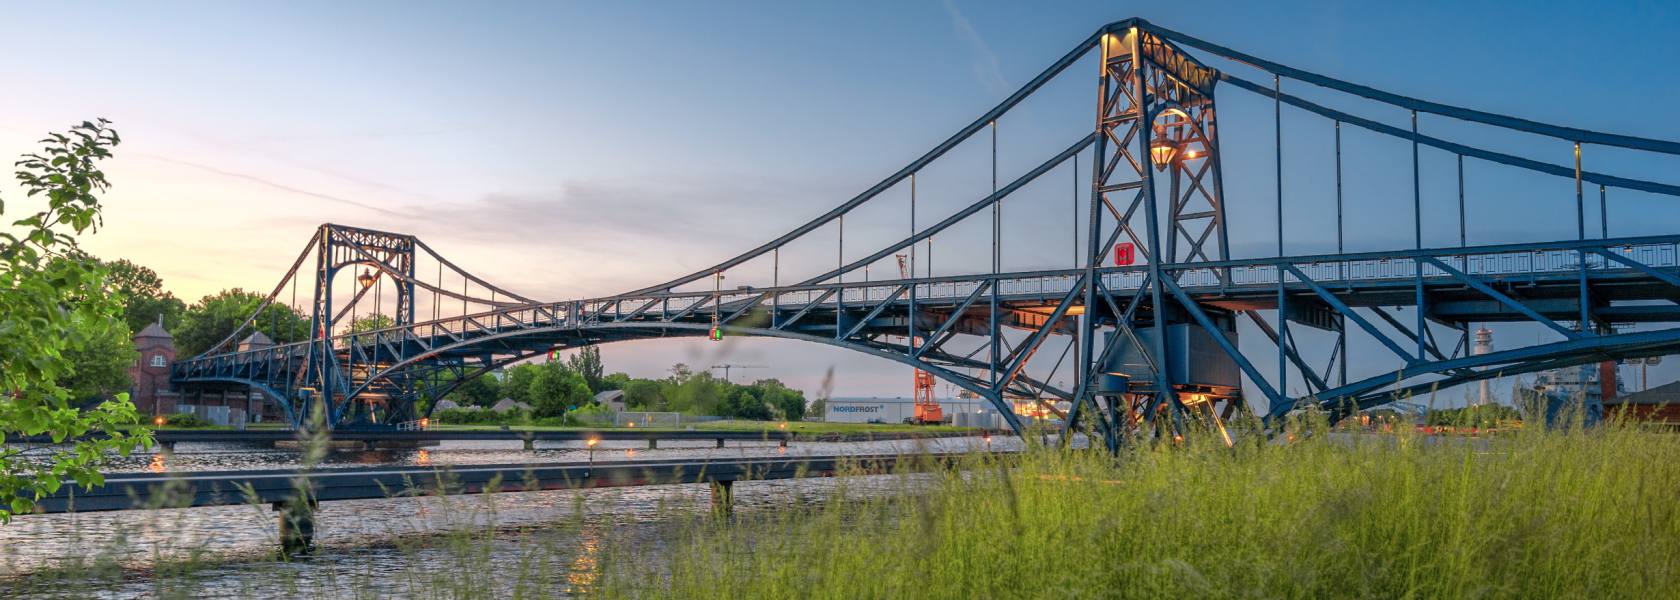 KW-Brücke, © Rainer Ganske